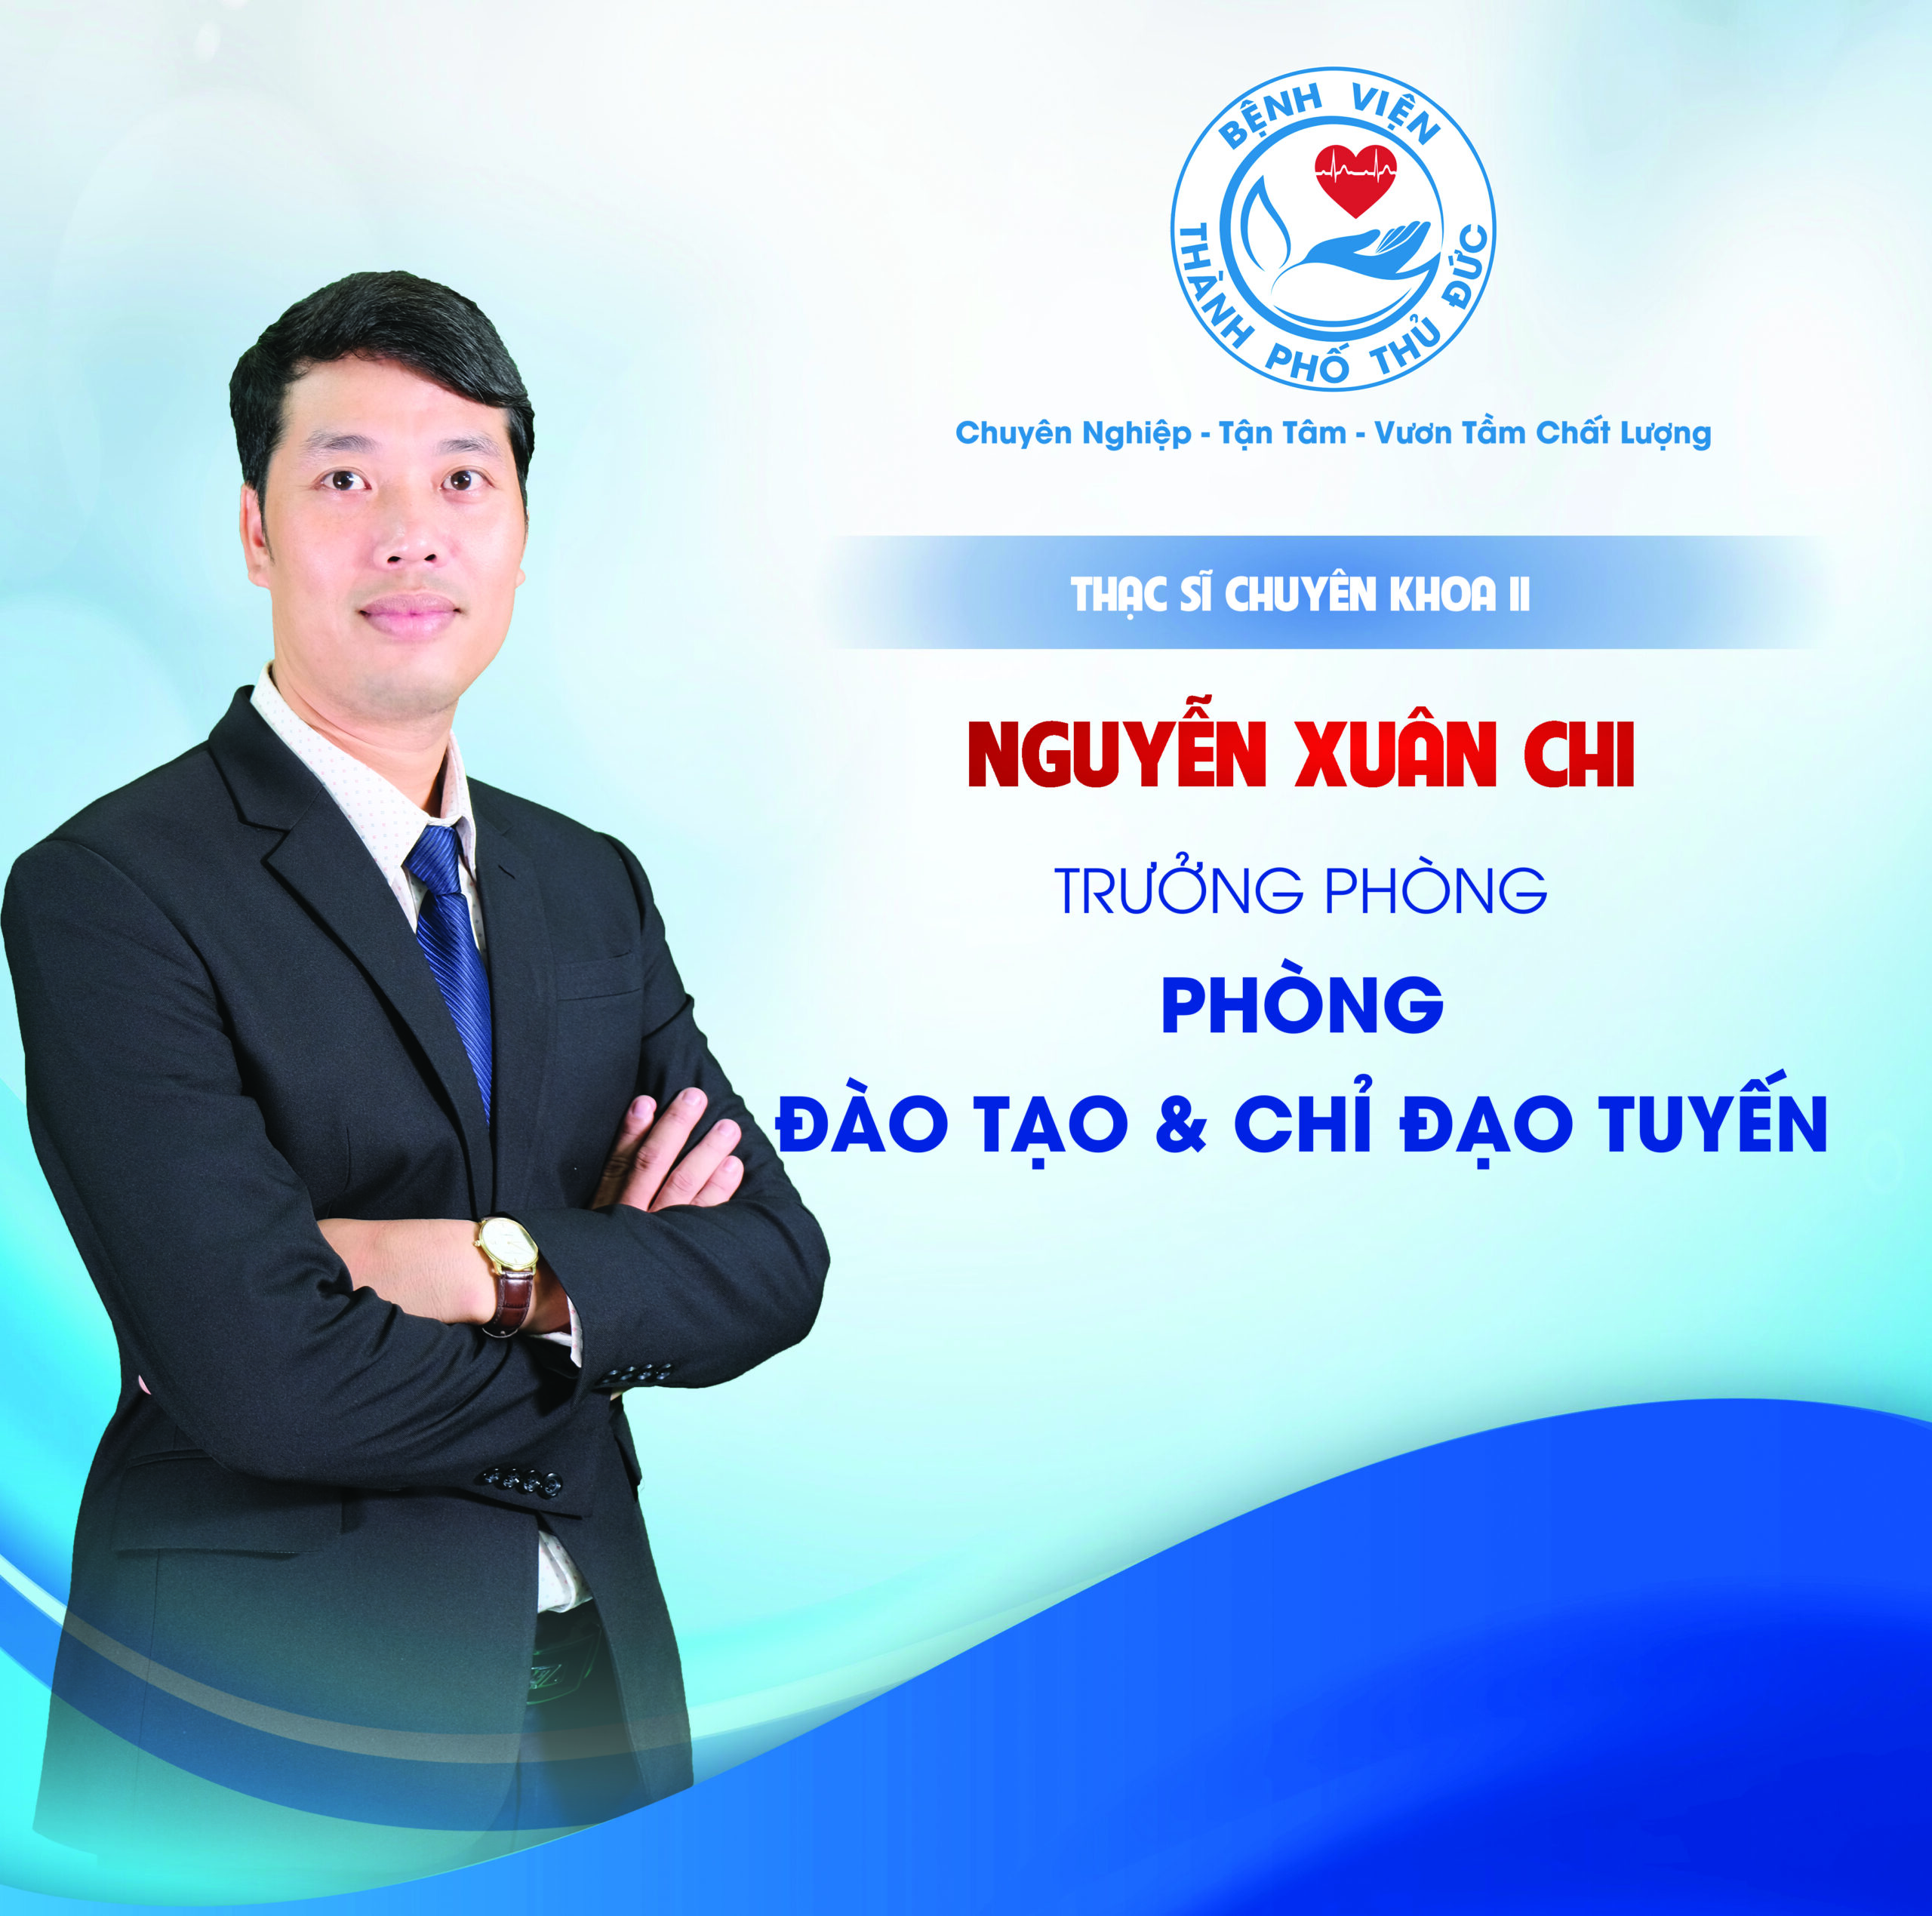 ThS.CKII Nguyễn Xuân Chi - Trưởng phòng Đào tạo & Chỉ đạo tuyến